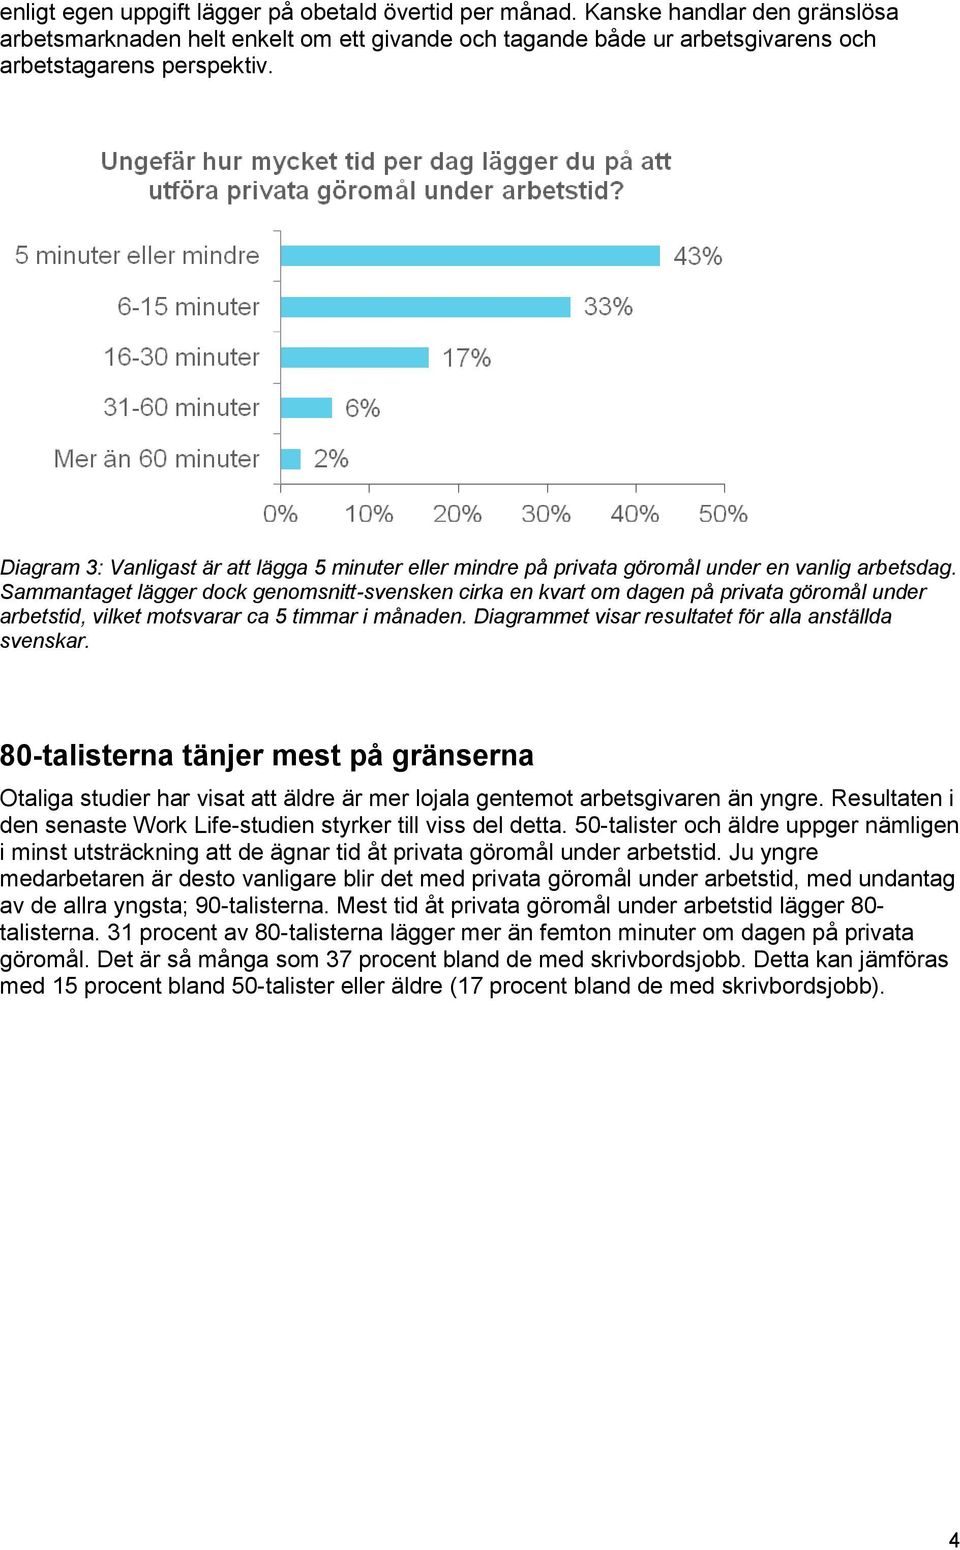 Sammantaget lägger dock genomsnitt-svensken cirka en kvart om dagen på privata göromål under arbetstid, vilket motsvarar ca 5 timmar i månaden. Diagrammet visar resultatet för alla anställda svenskar.